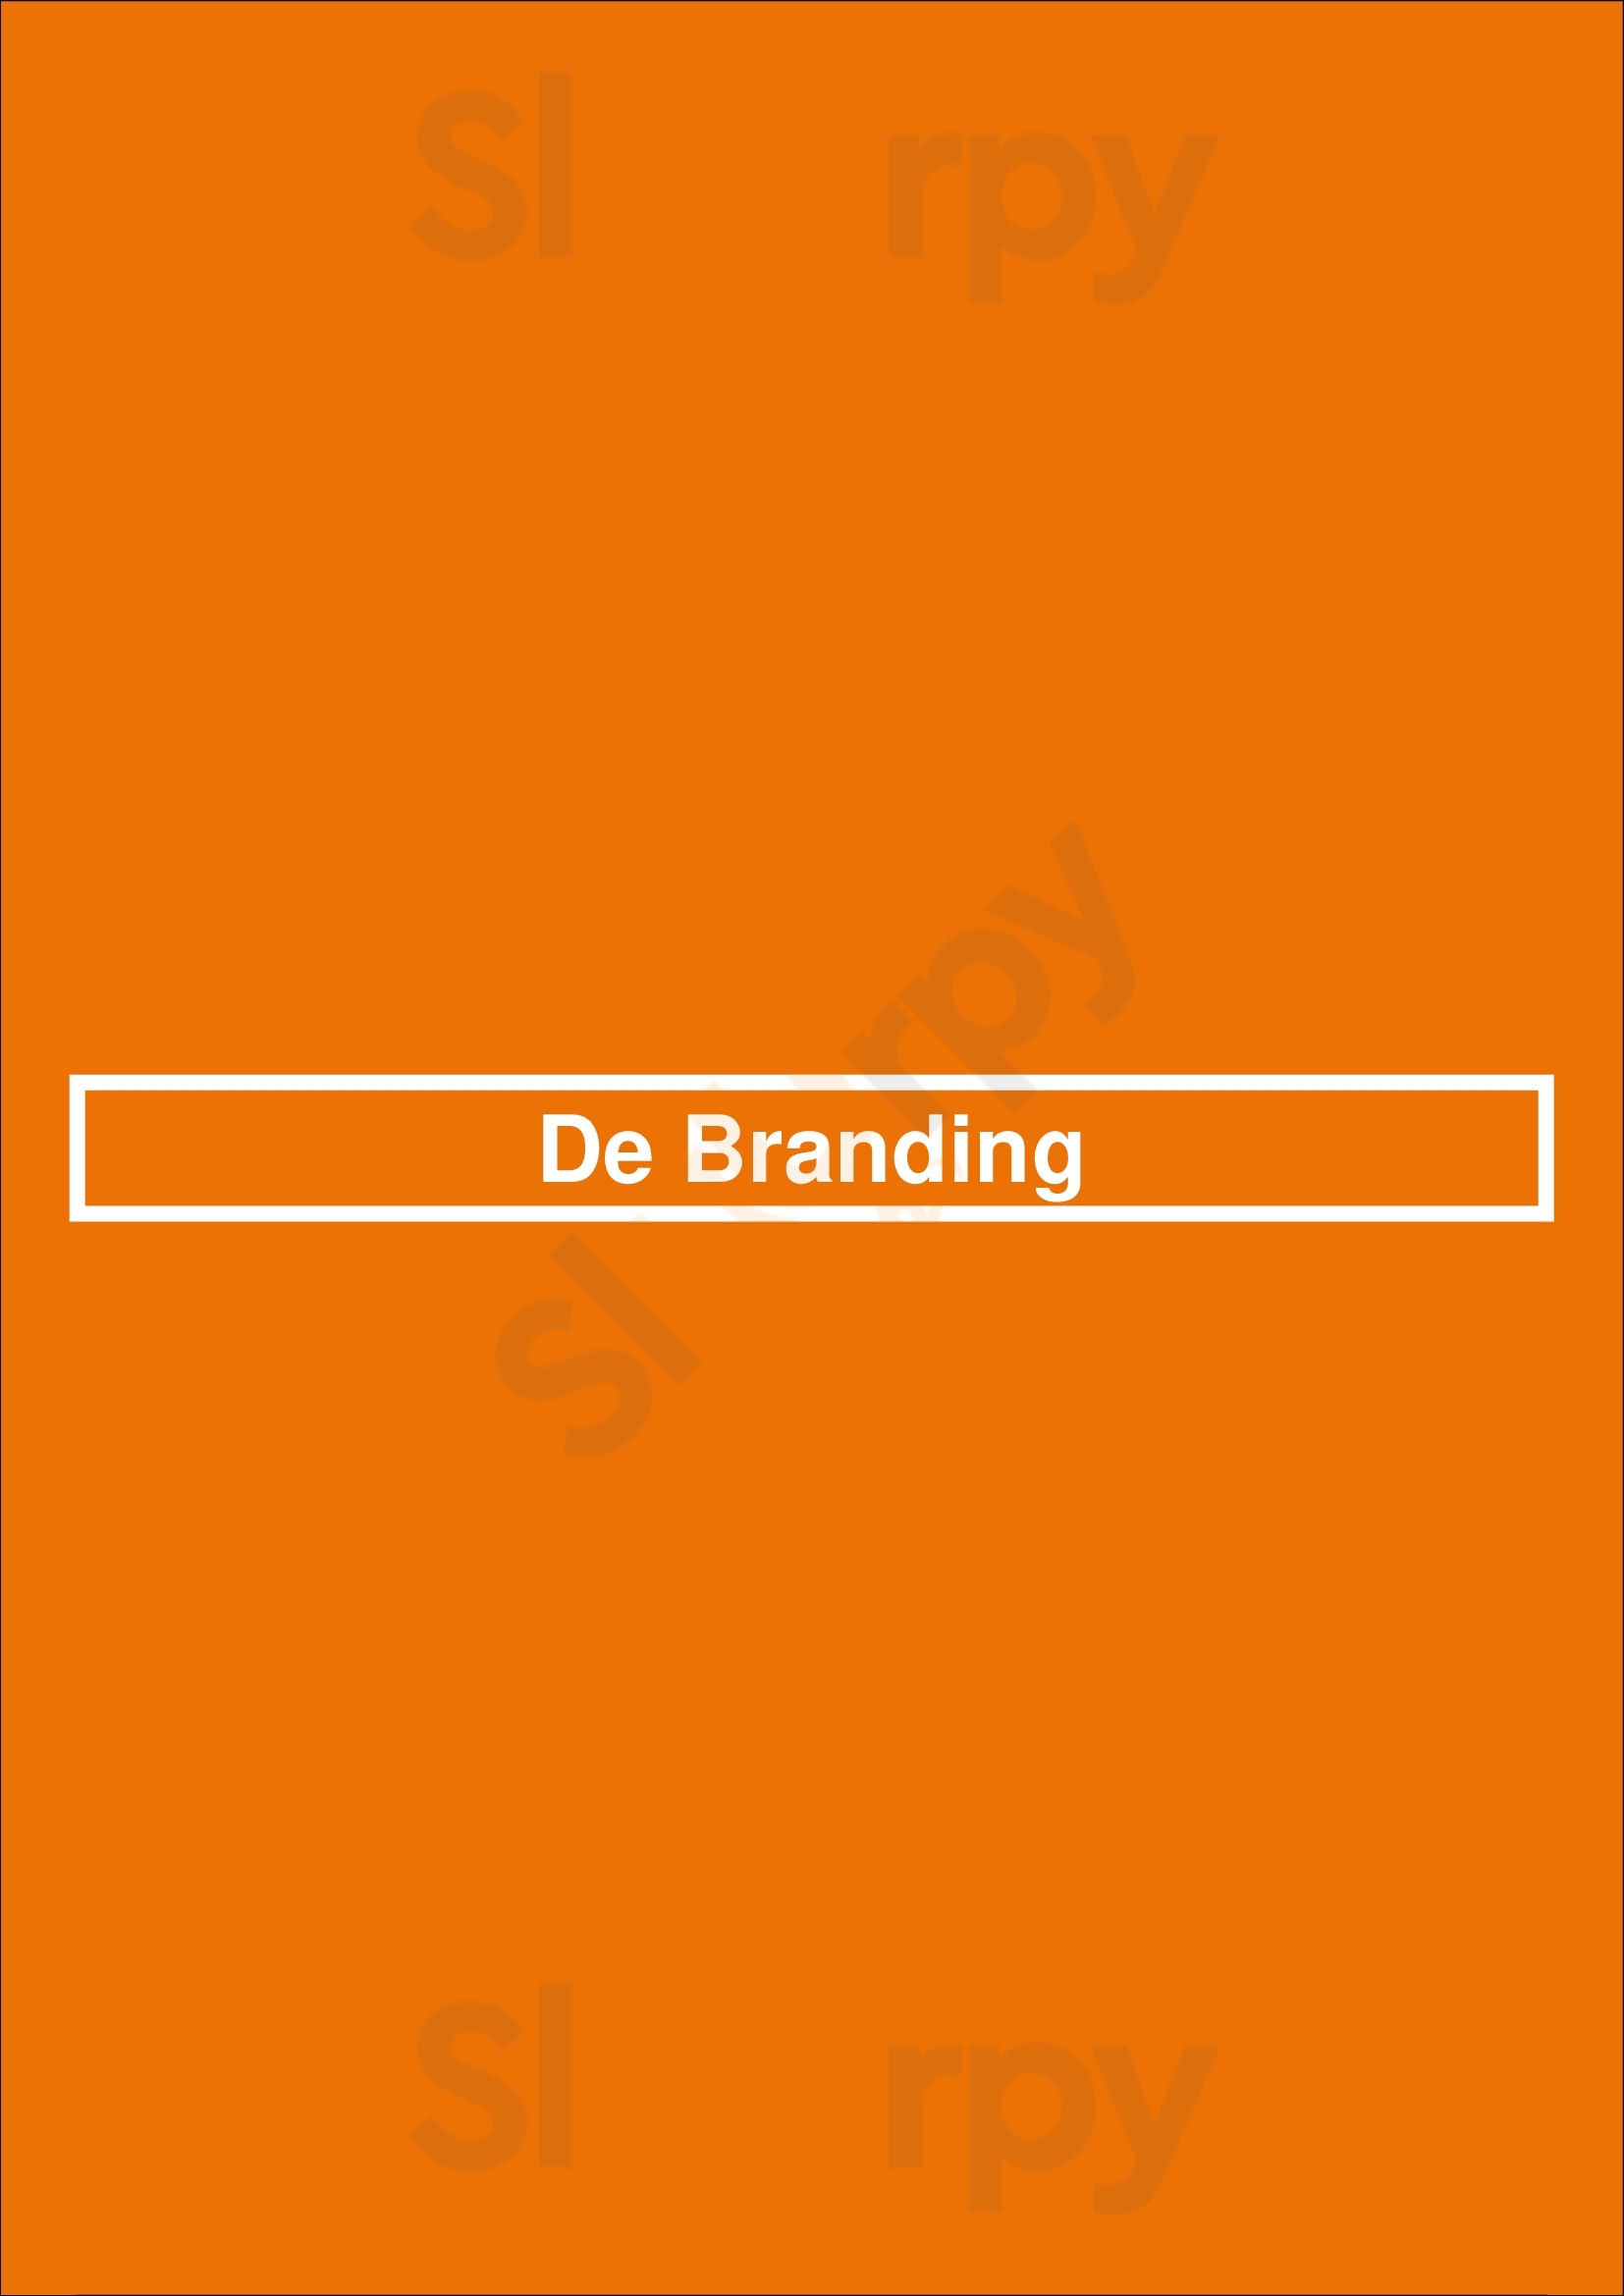 De Branding Utrecht Menu - 1